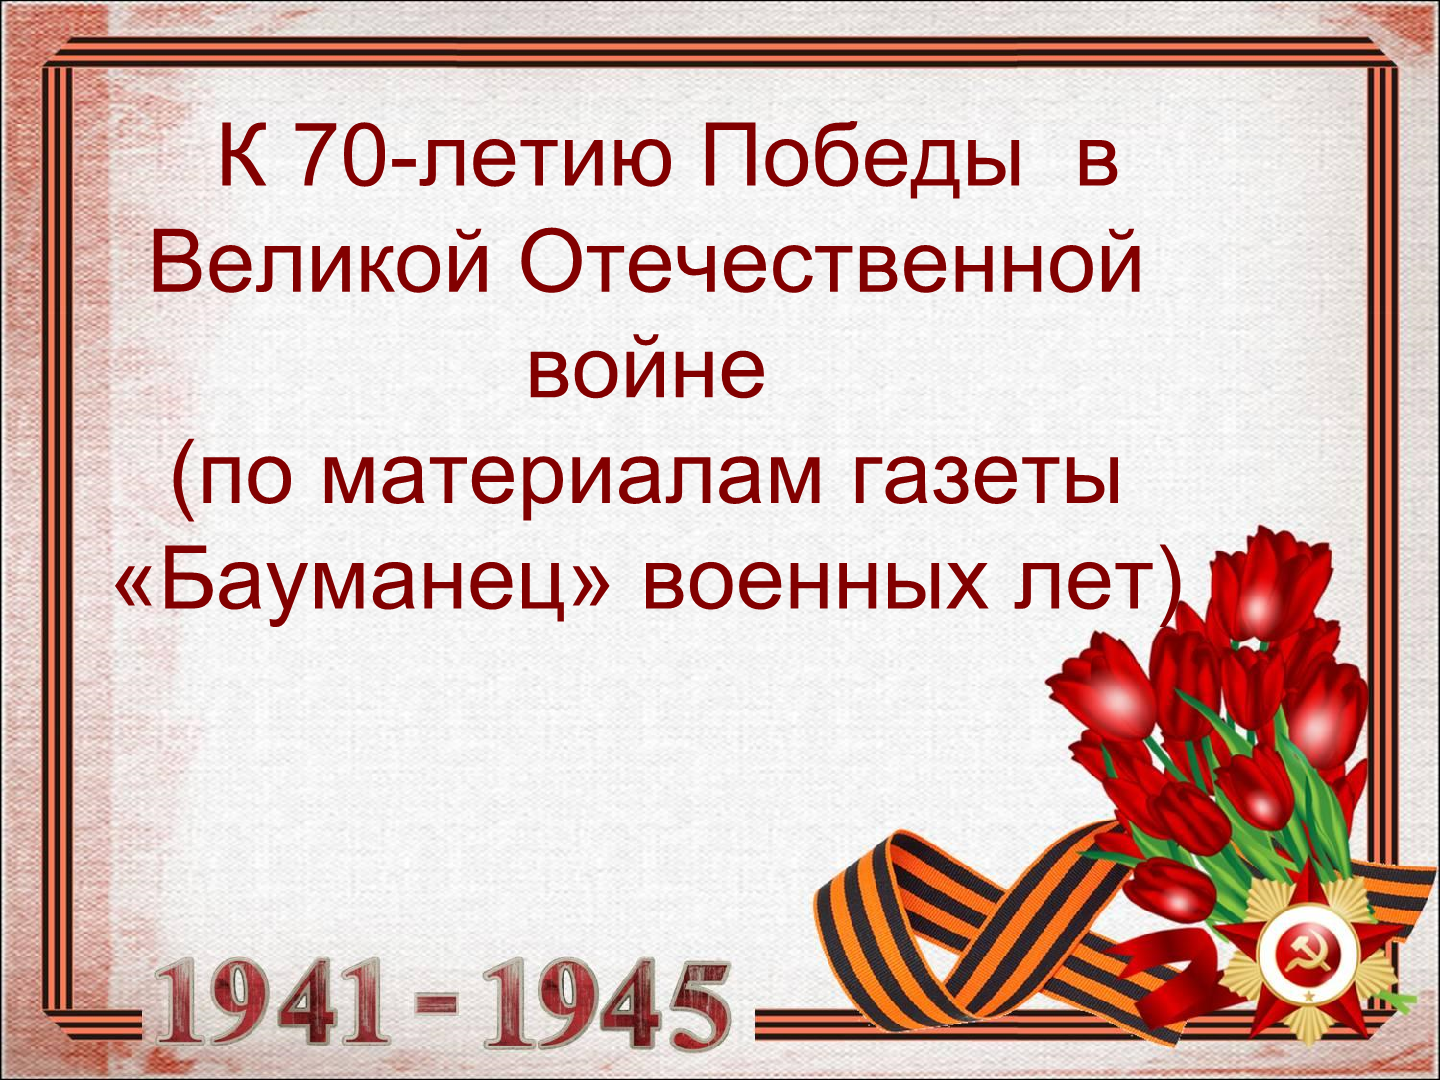 70-летию Победы в Великой Отечественной войне